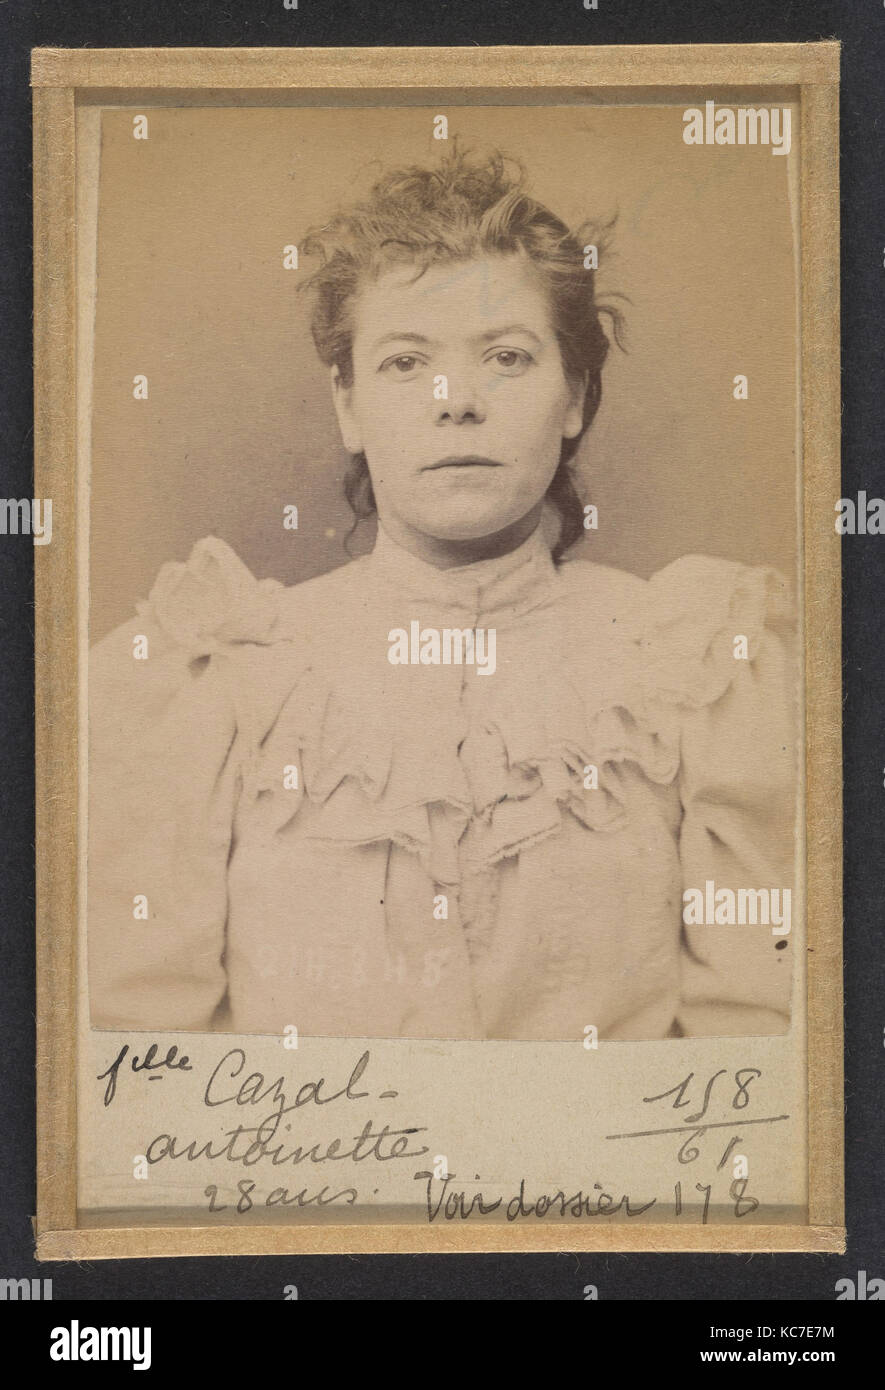 Cazal. Antoinette. 28 ans, née à Salgouz (Cantal). Couturière. Anarchiste. 28/2/94., Alphonse Bertillon, 1894 Foto de stock